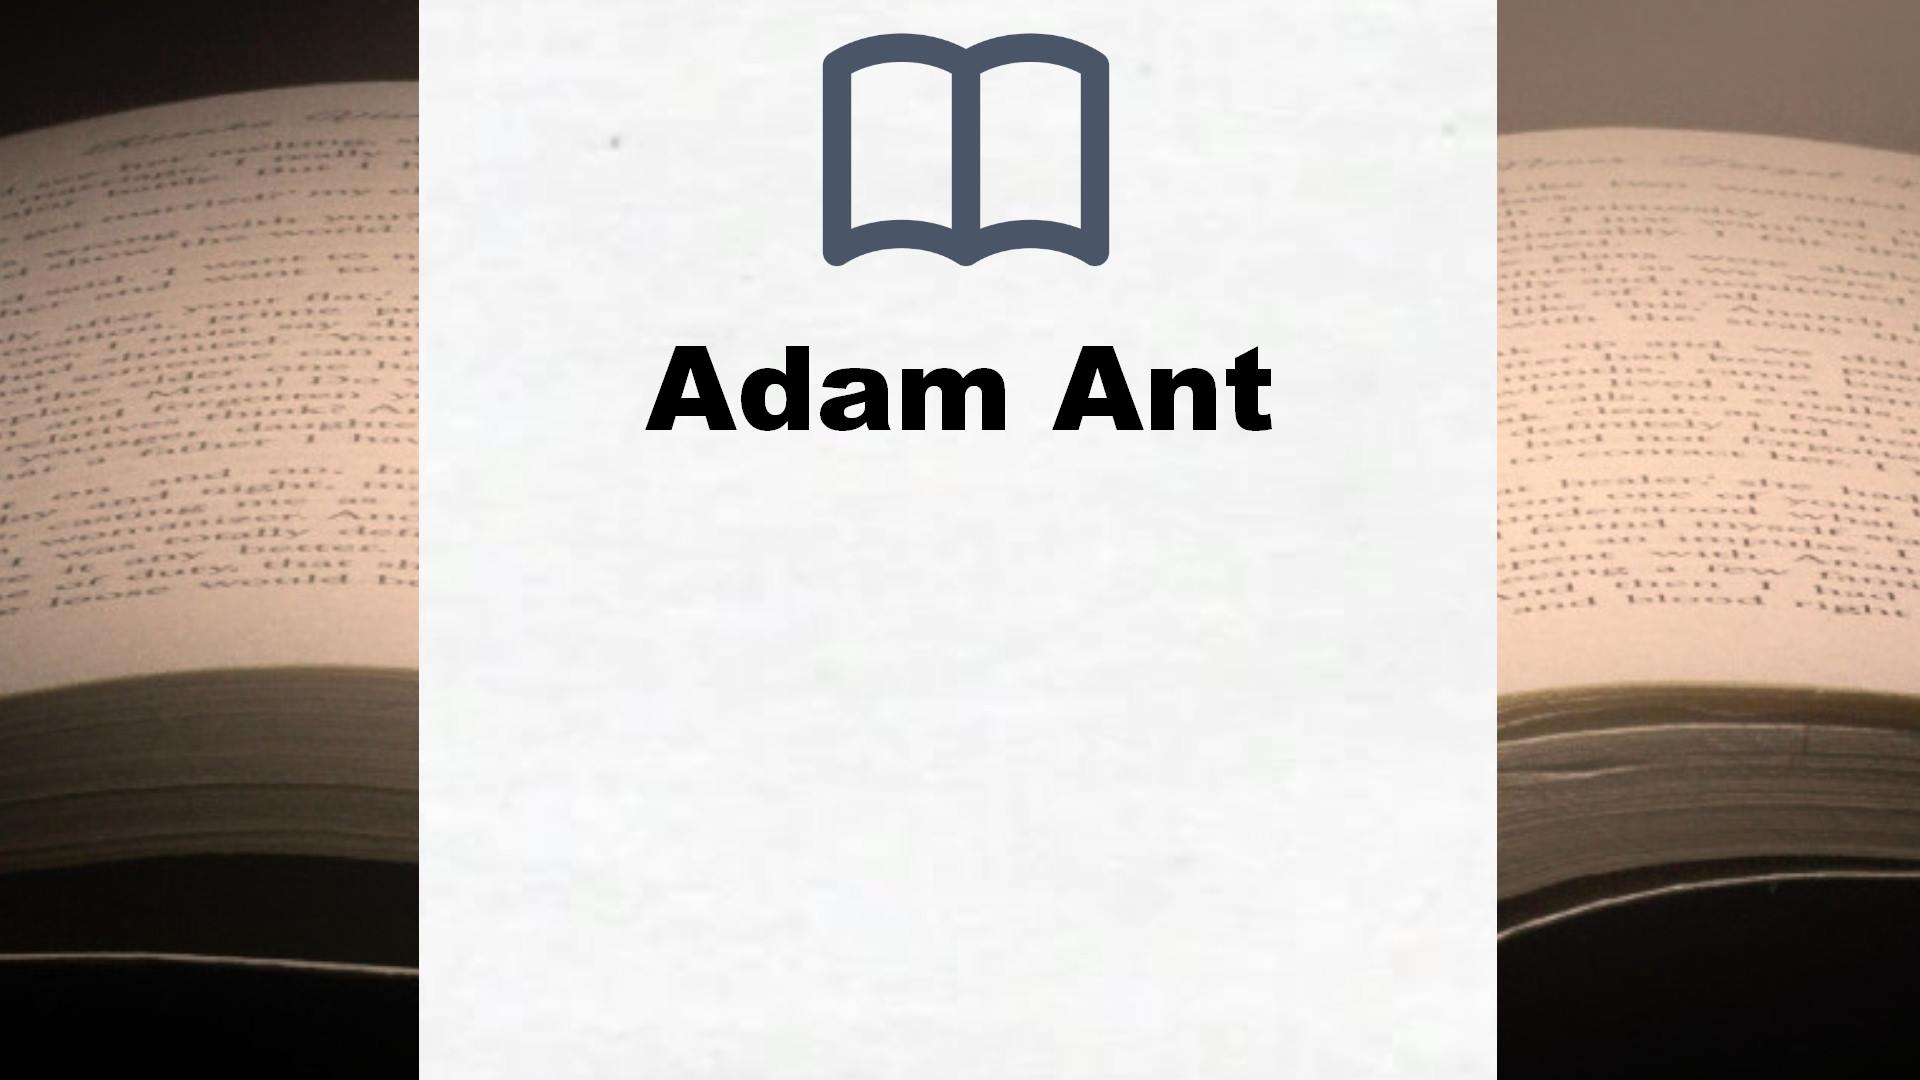 Bücher über Adam Ant